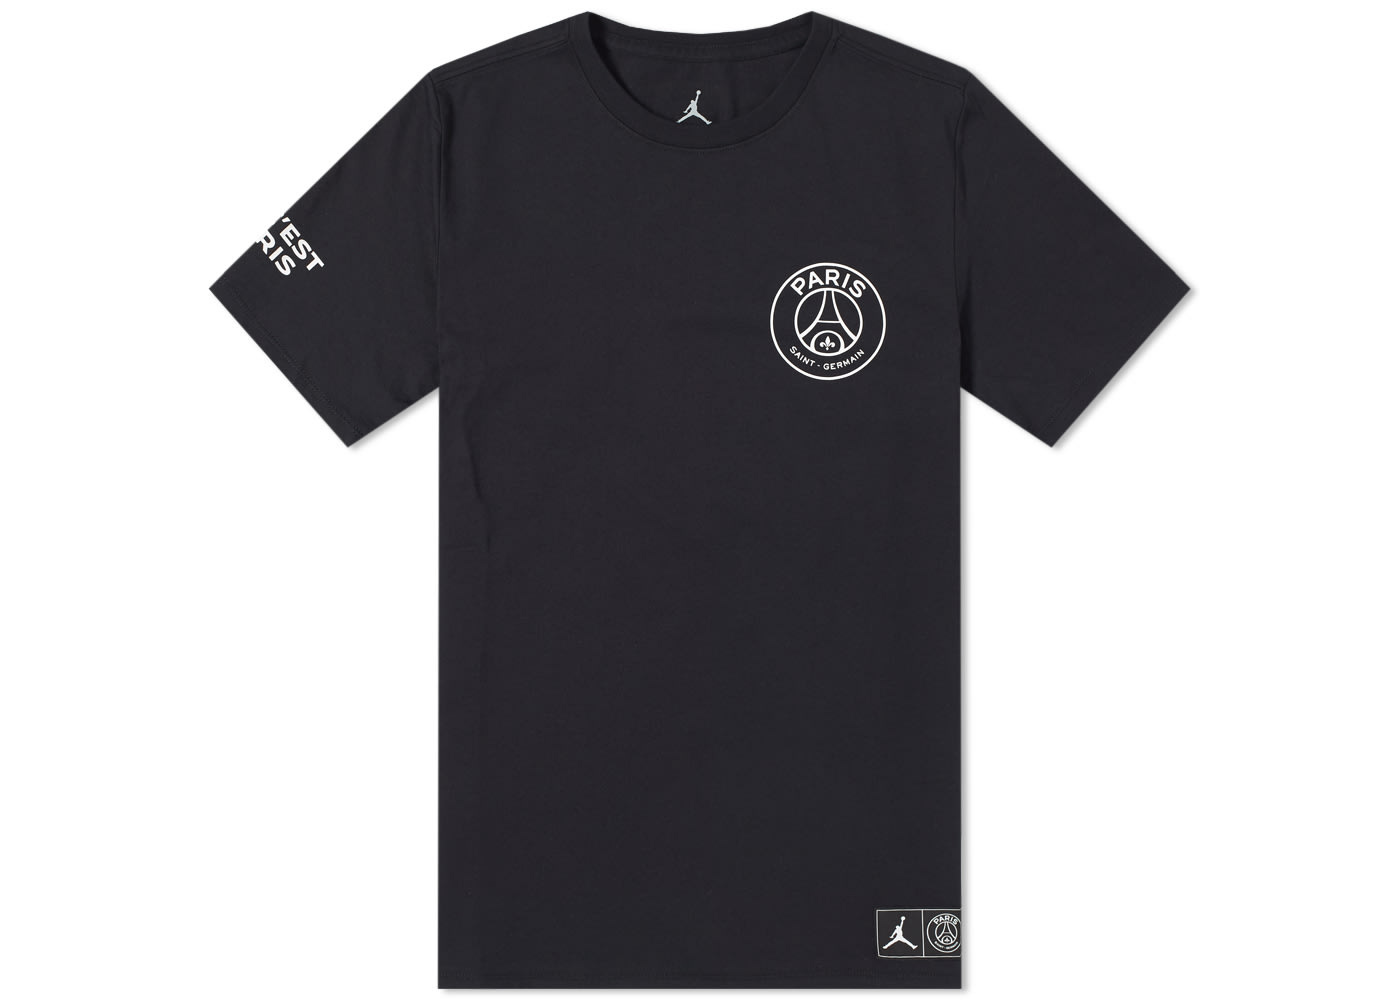 Jordan x Paris Saint-Germain Logo T-shirt Black/White メンズ - JP